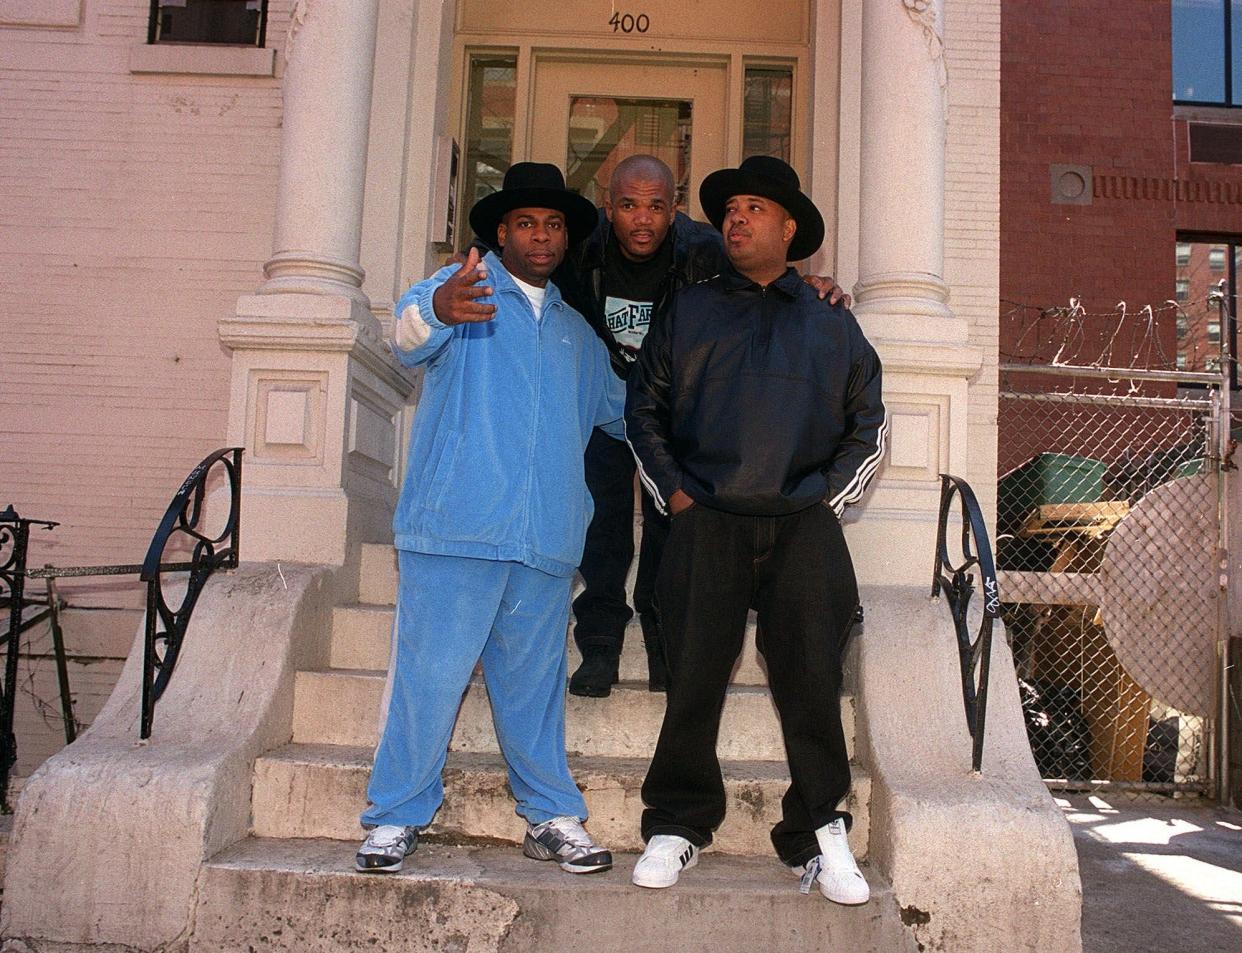 Rap trio Run DMC sport hip hop style in 2001.